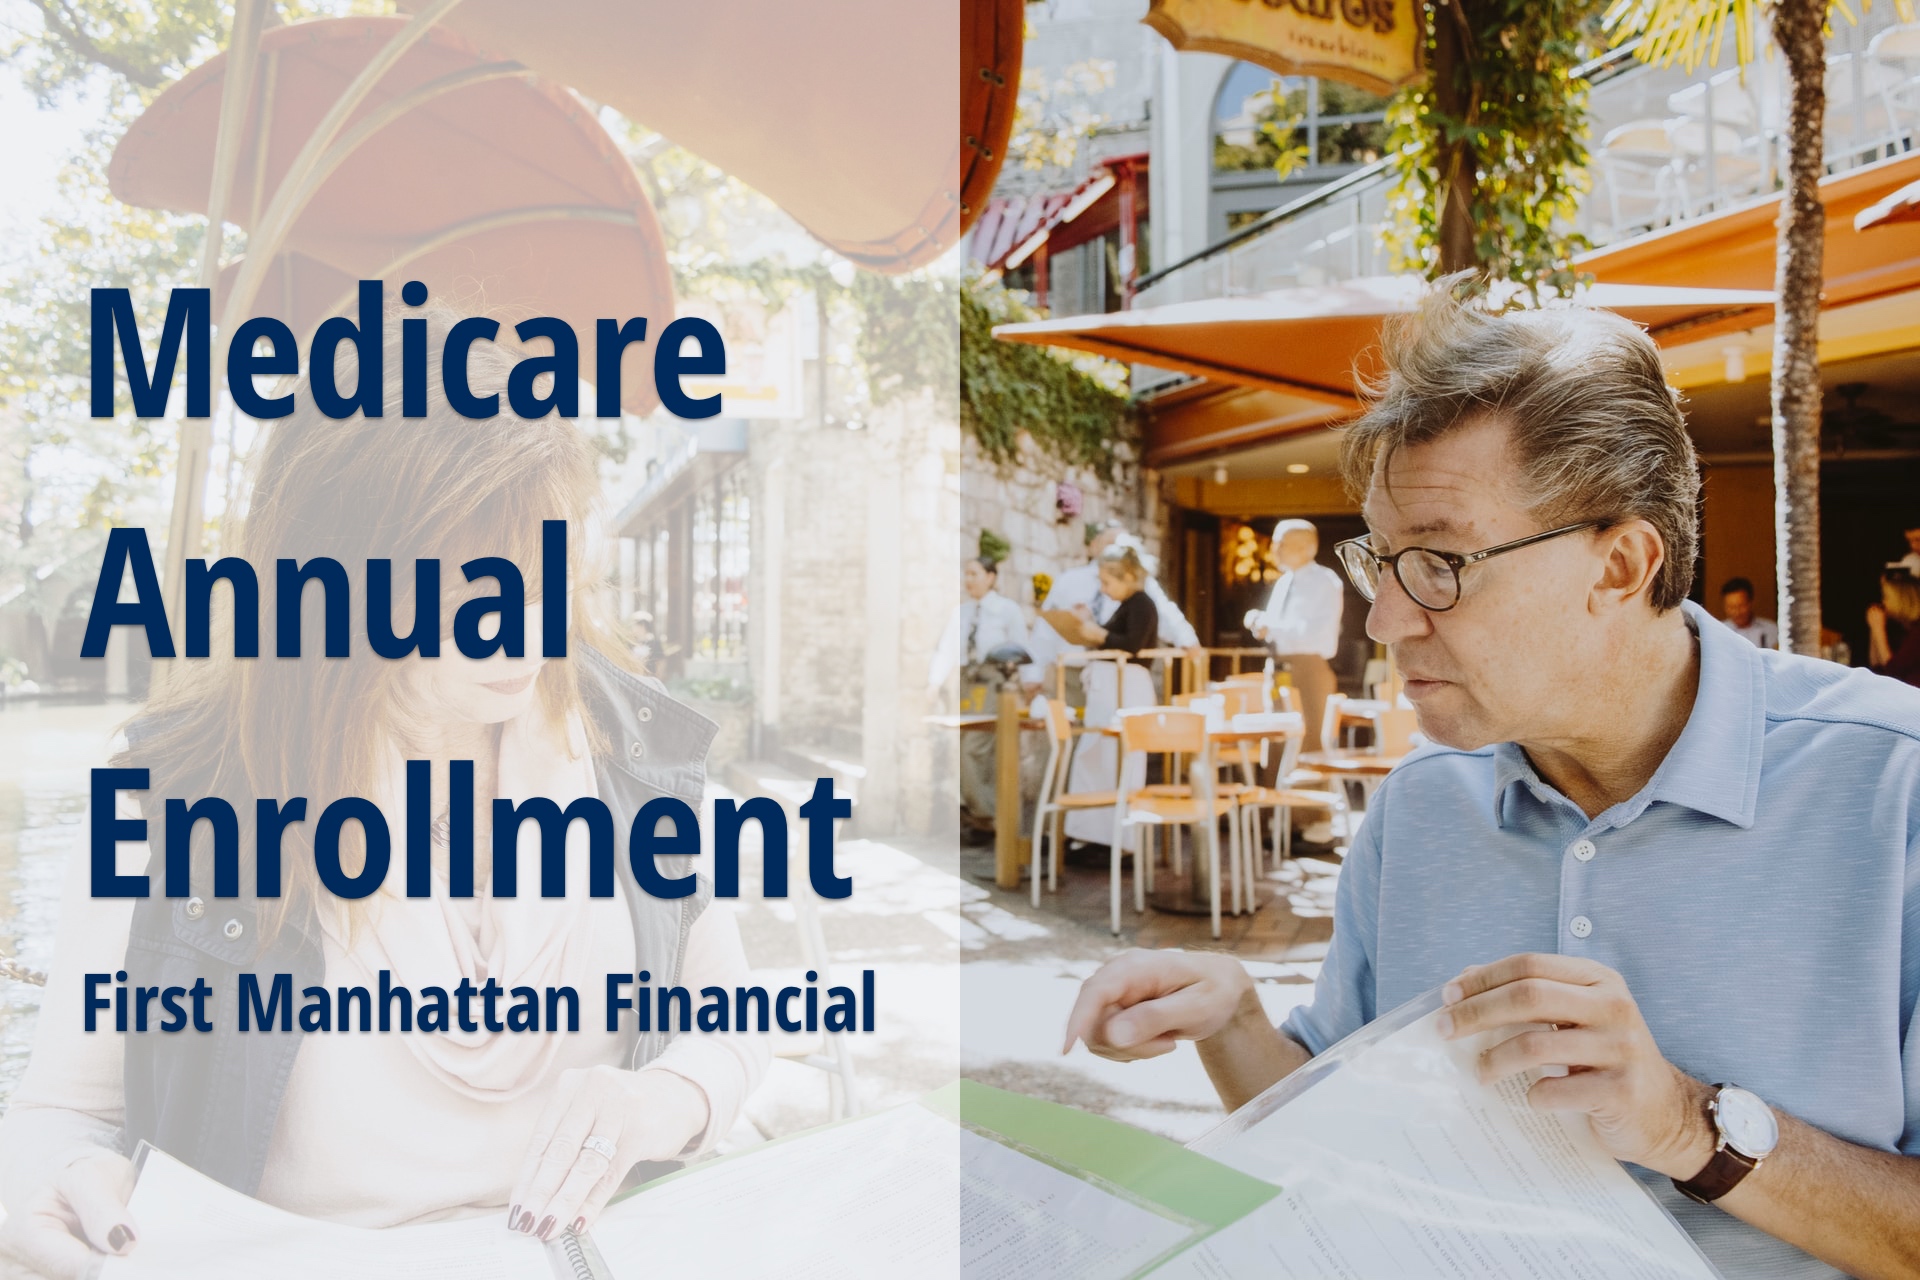 Medicare Annual Enrollment Period First Manhattan Financial